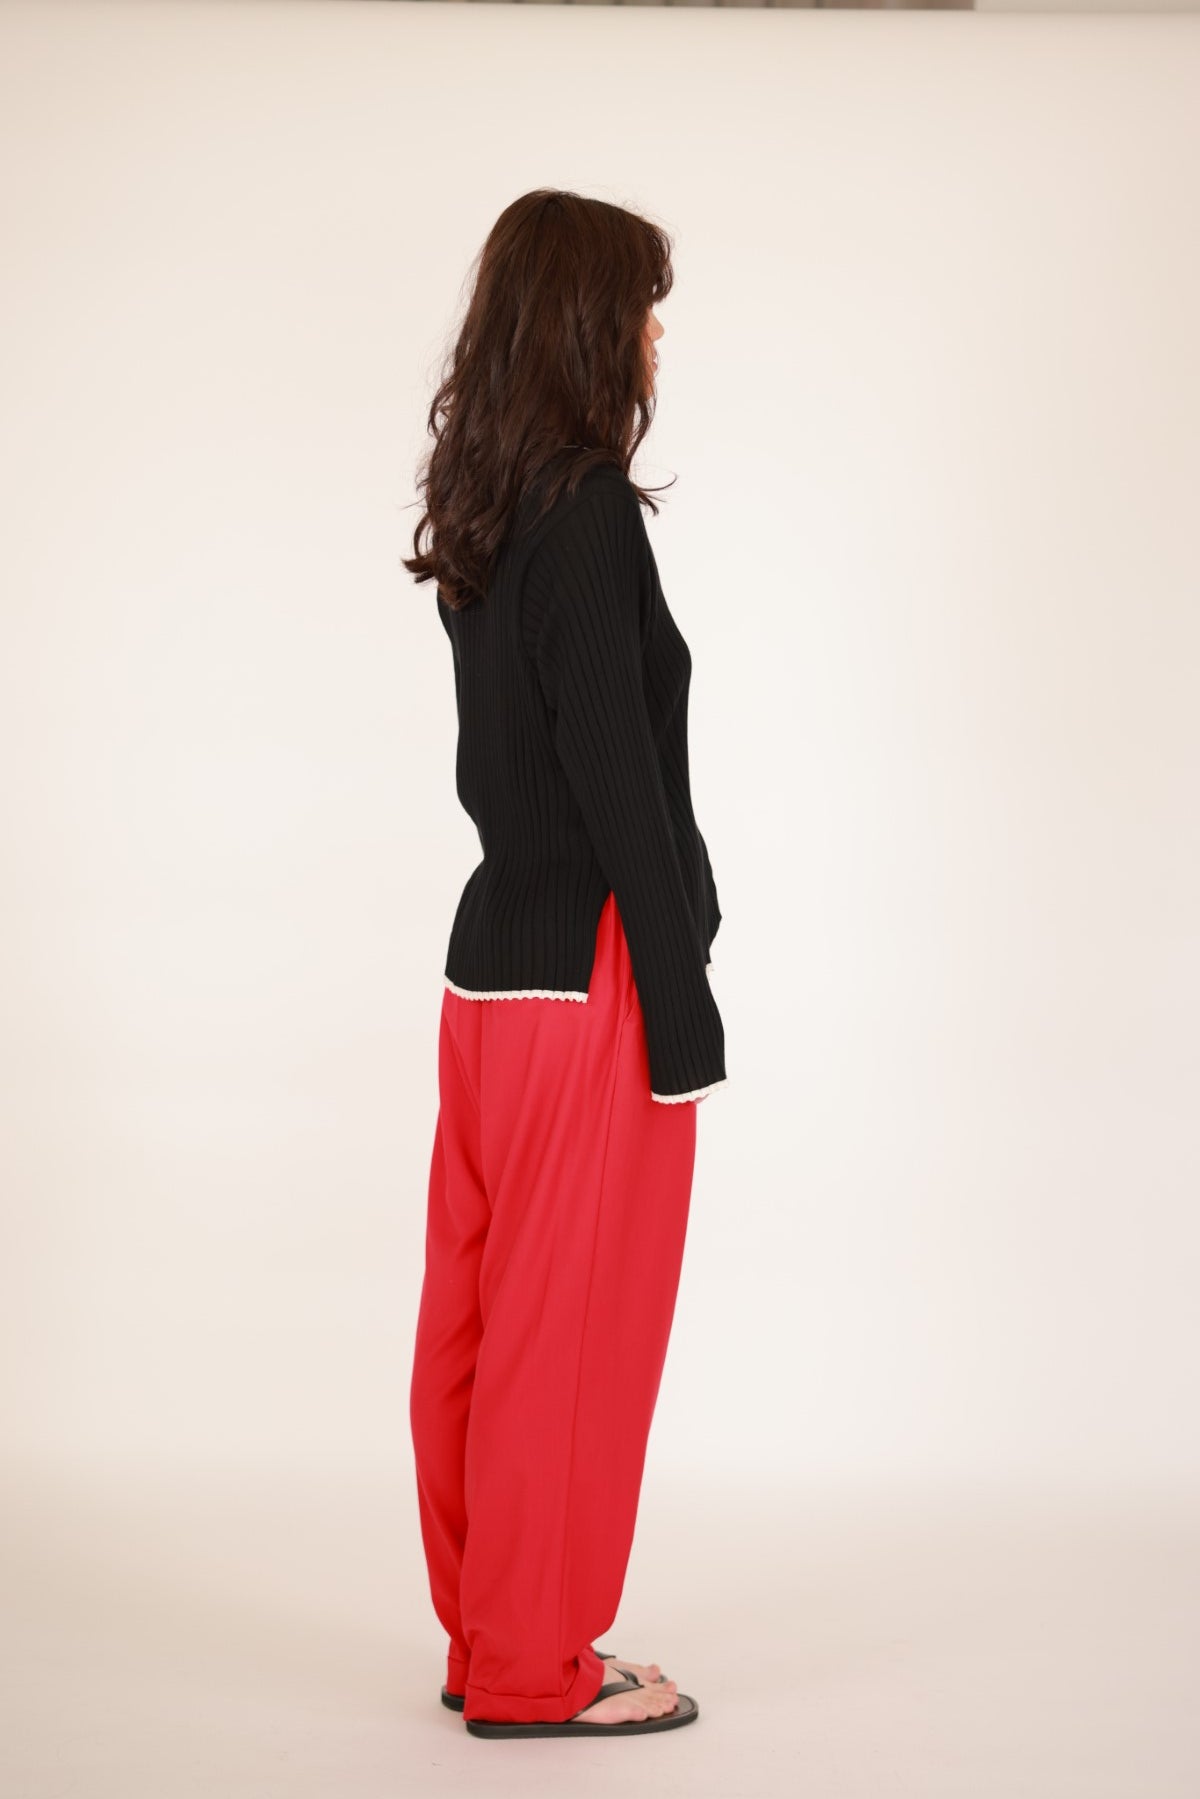 Merino wool and silk sweater red/black